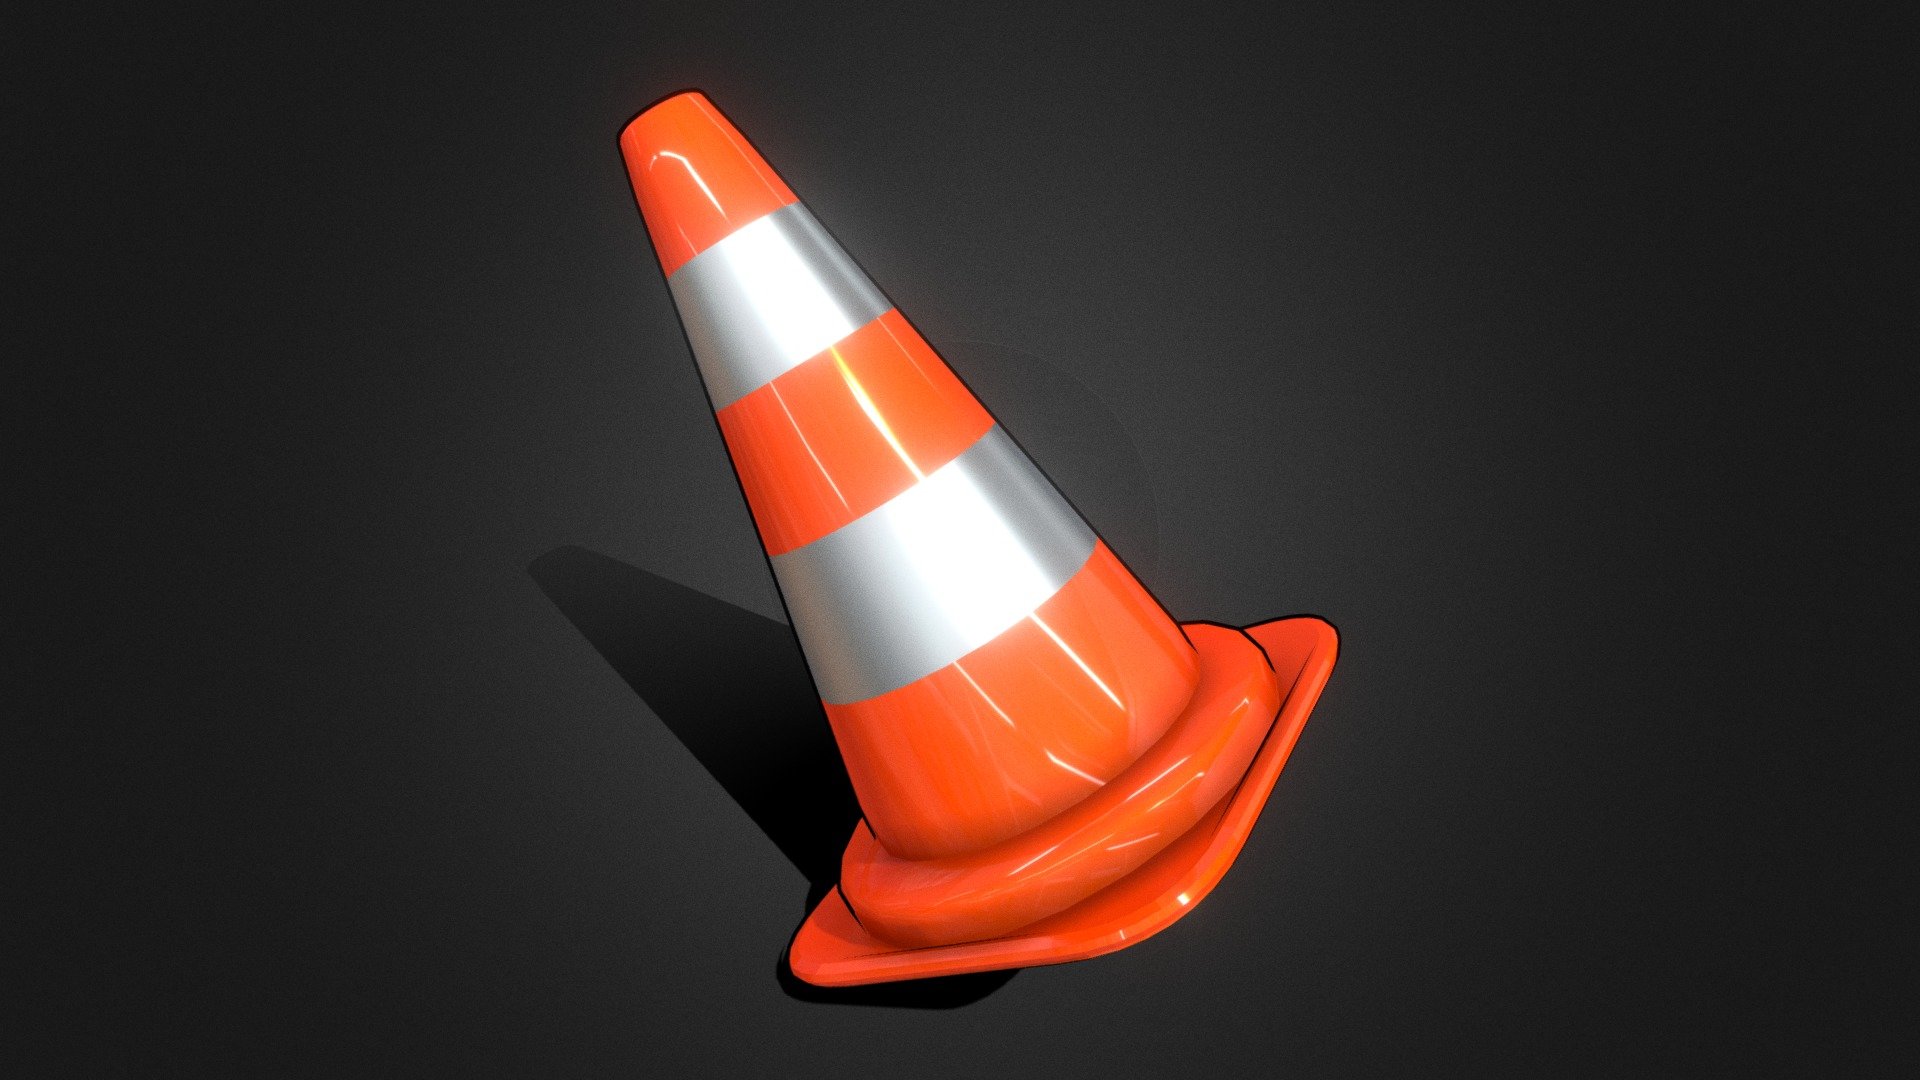 Traffic Cone Pylon / Verkehrshütchen - 3D model by Kafu Design (@kafudesign) 3d model